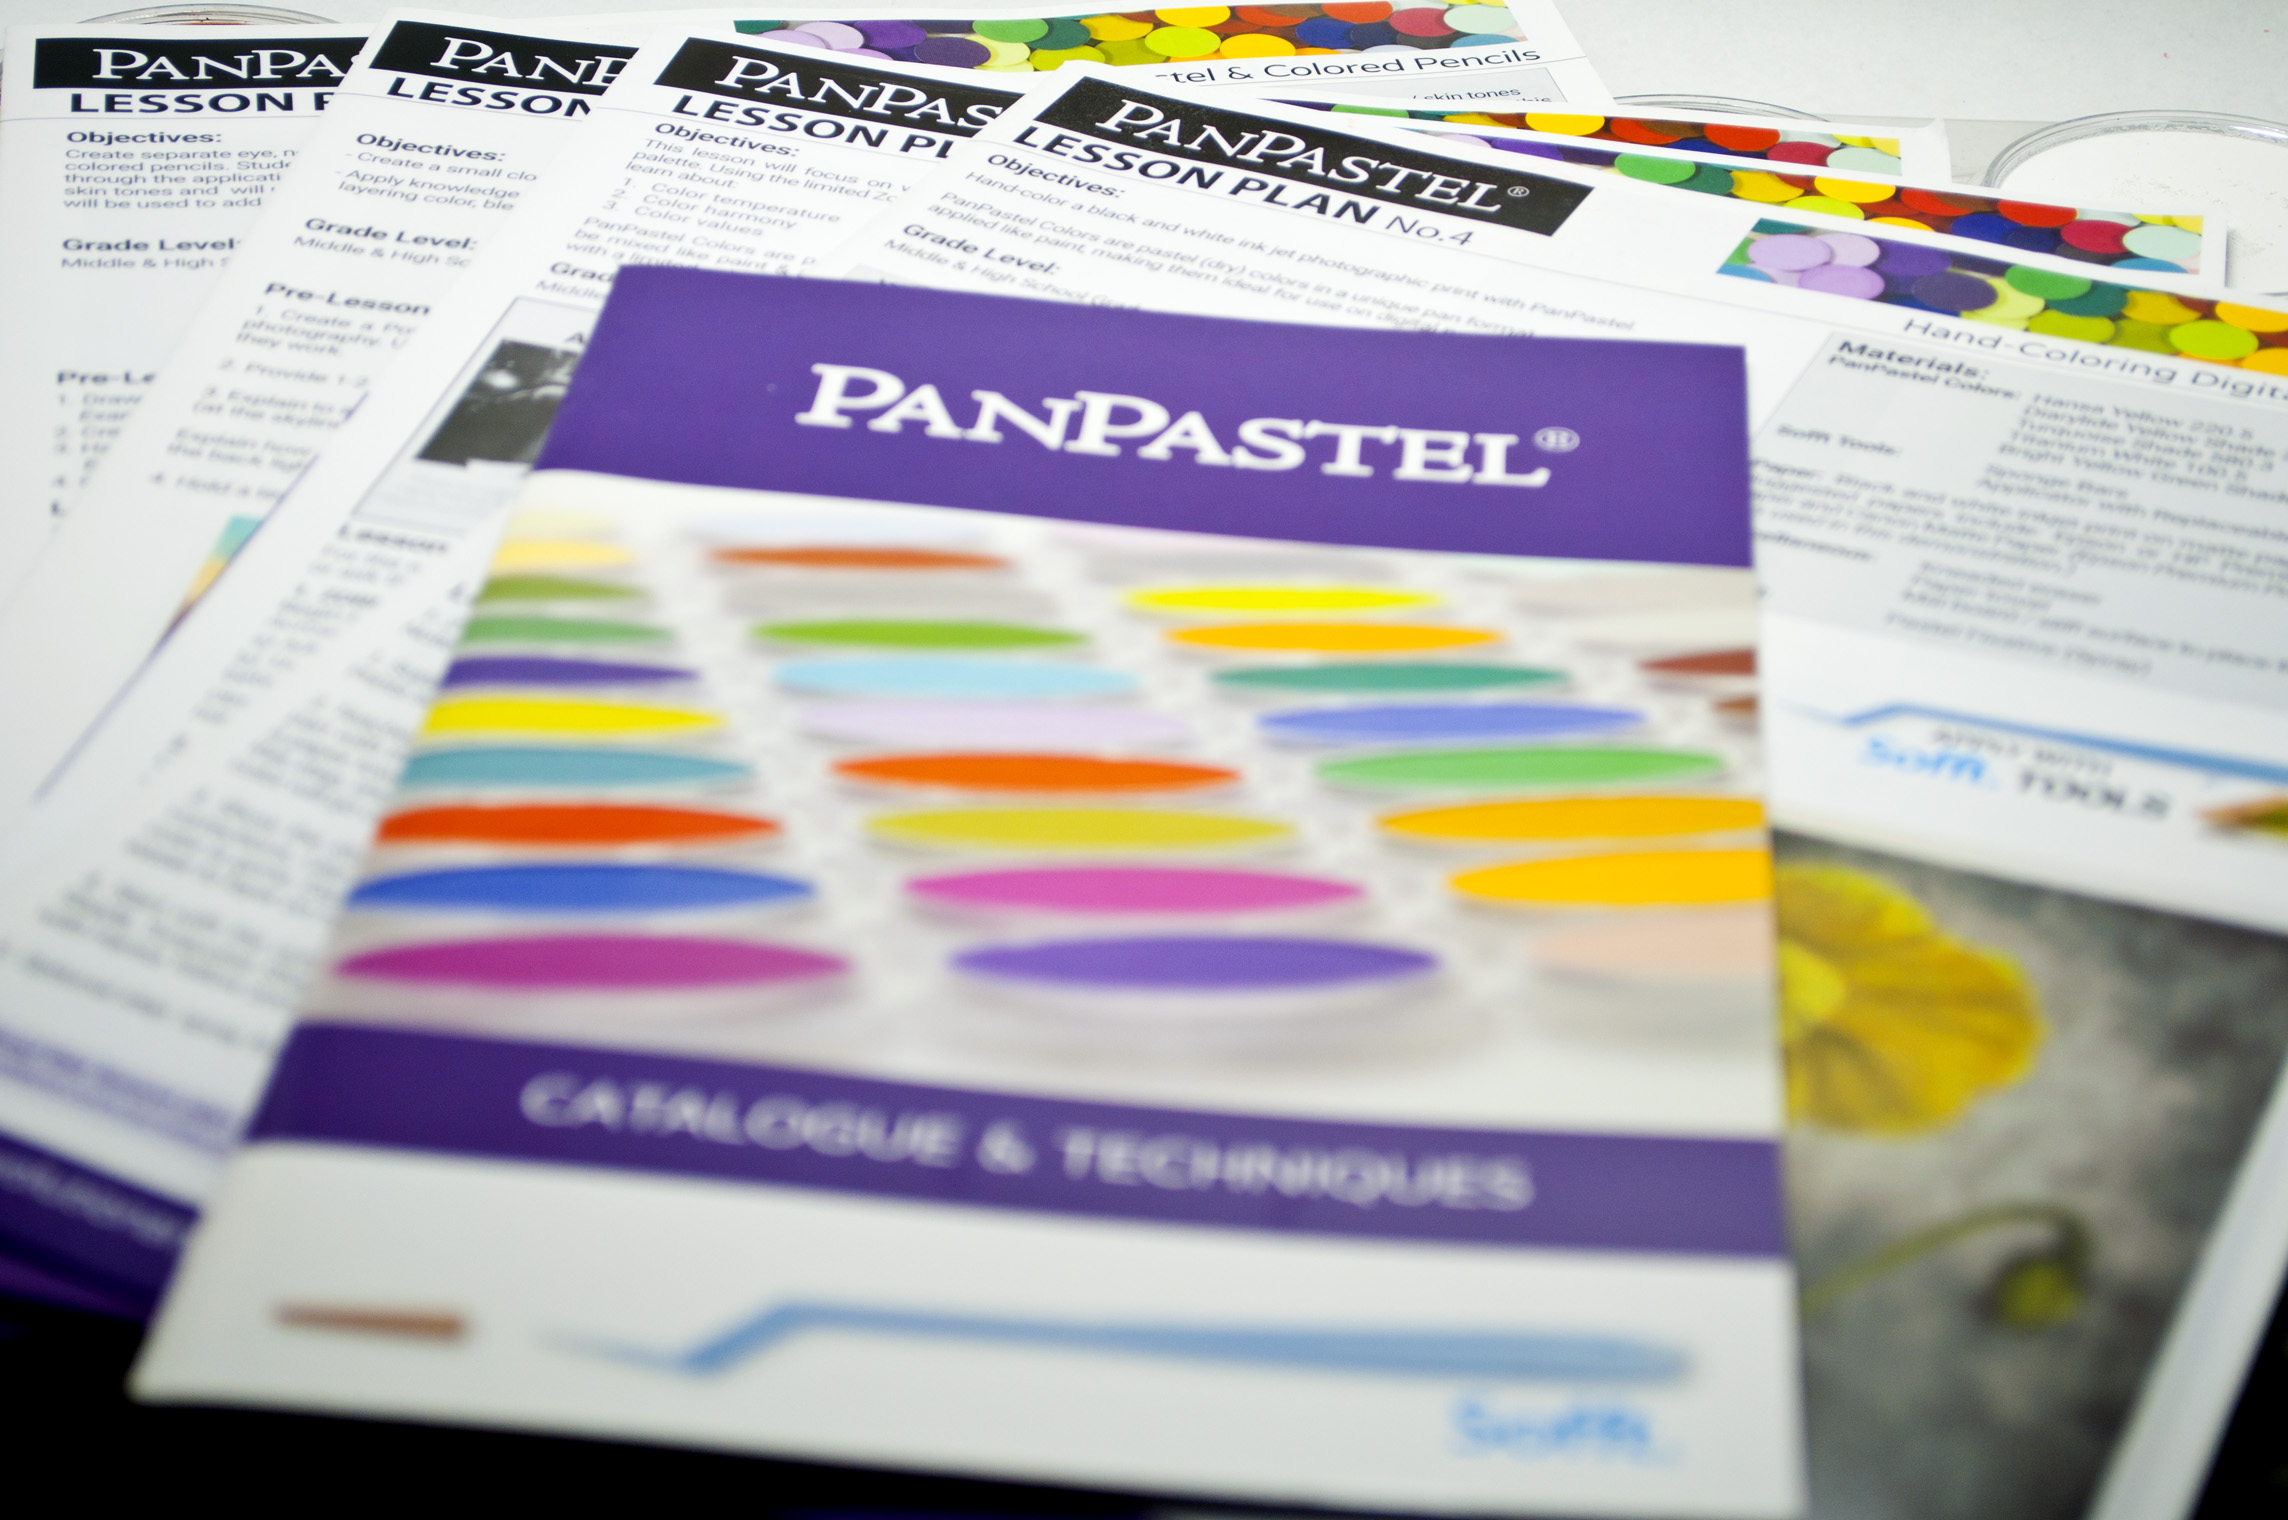 Skin Tones Kit (7 Colors) - Pan Pastel